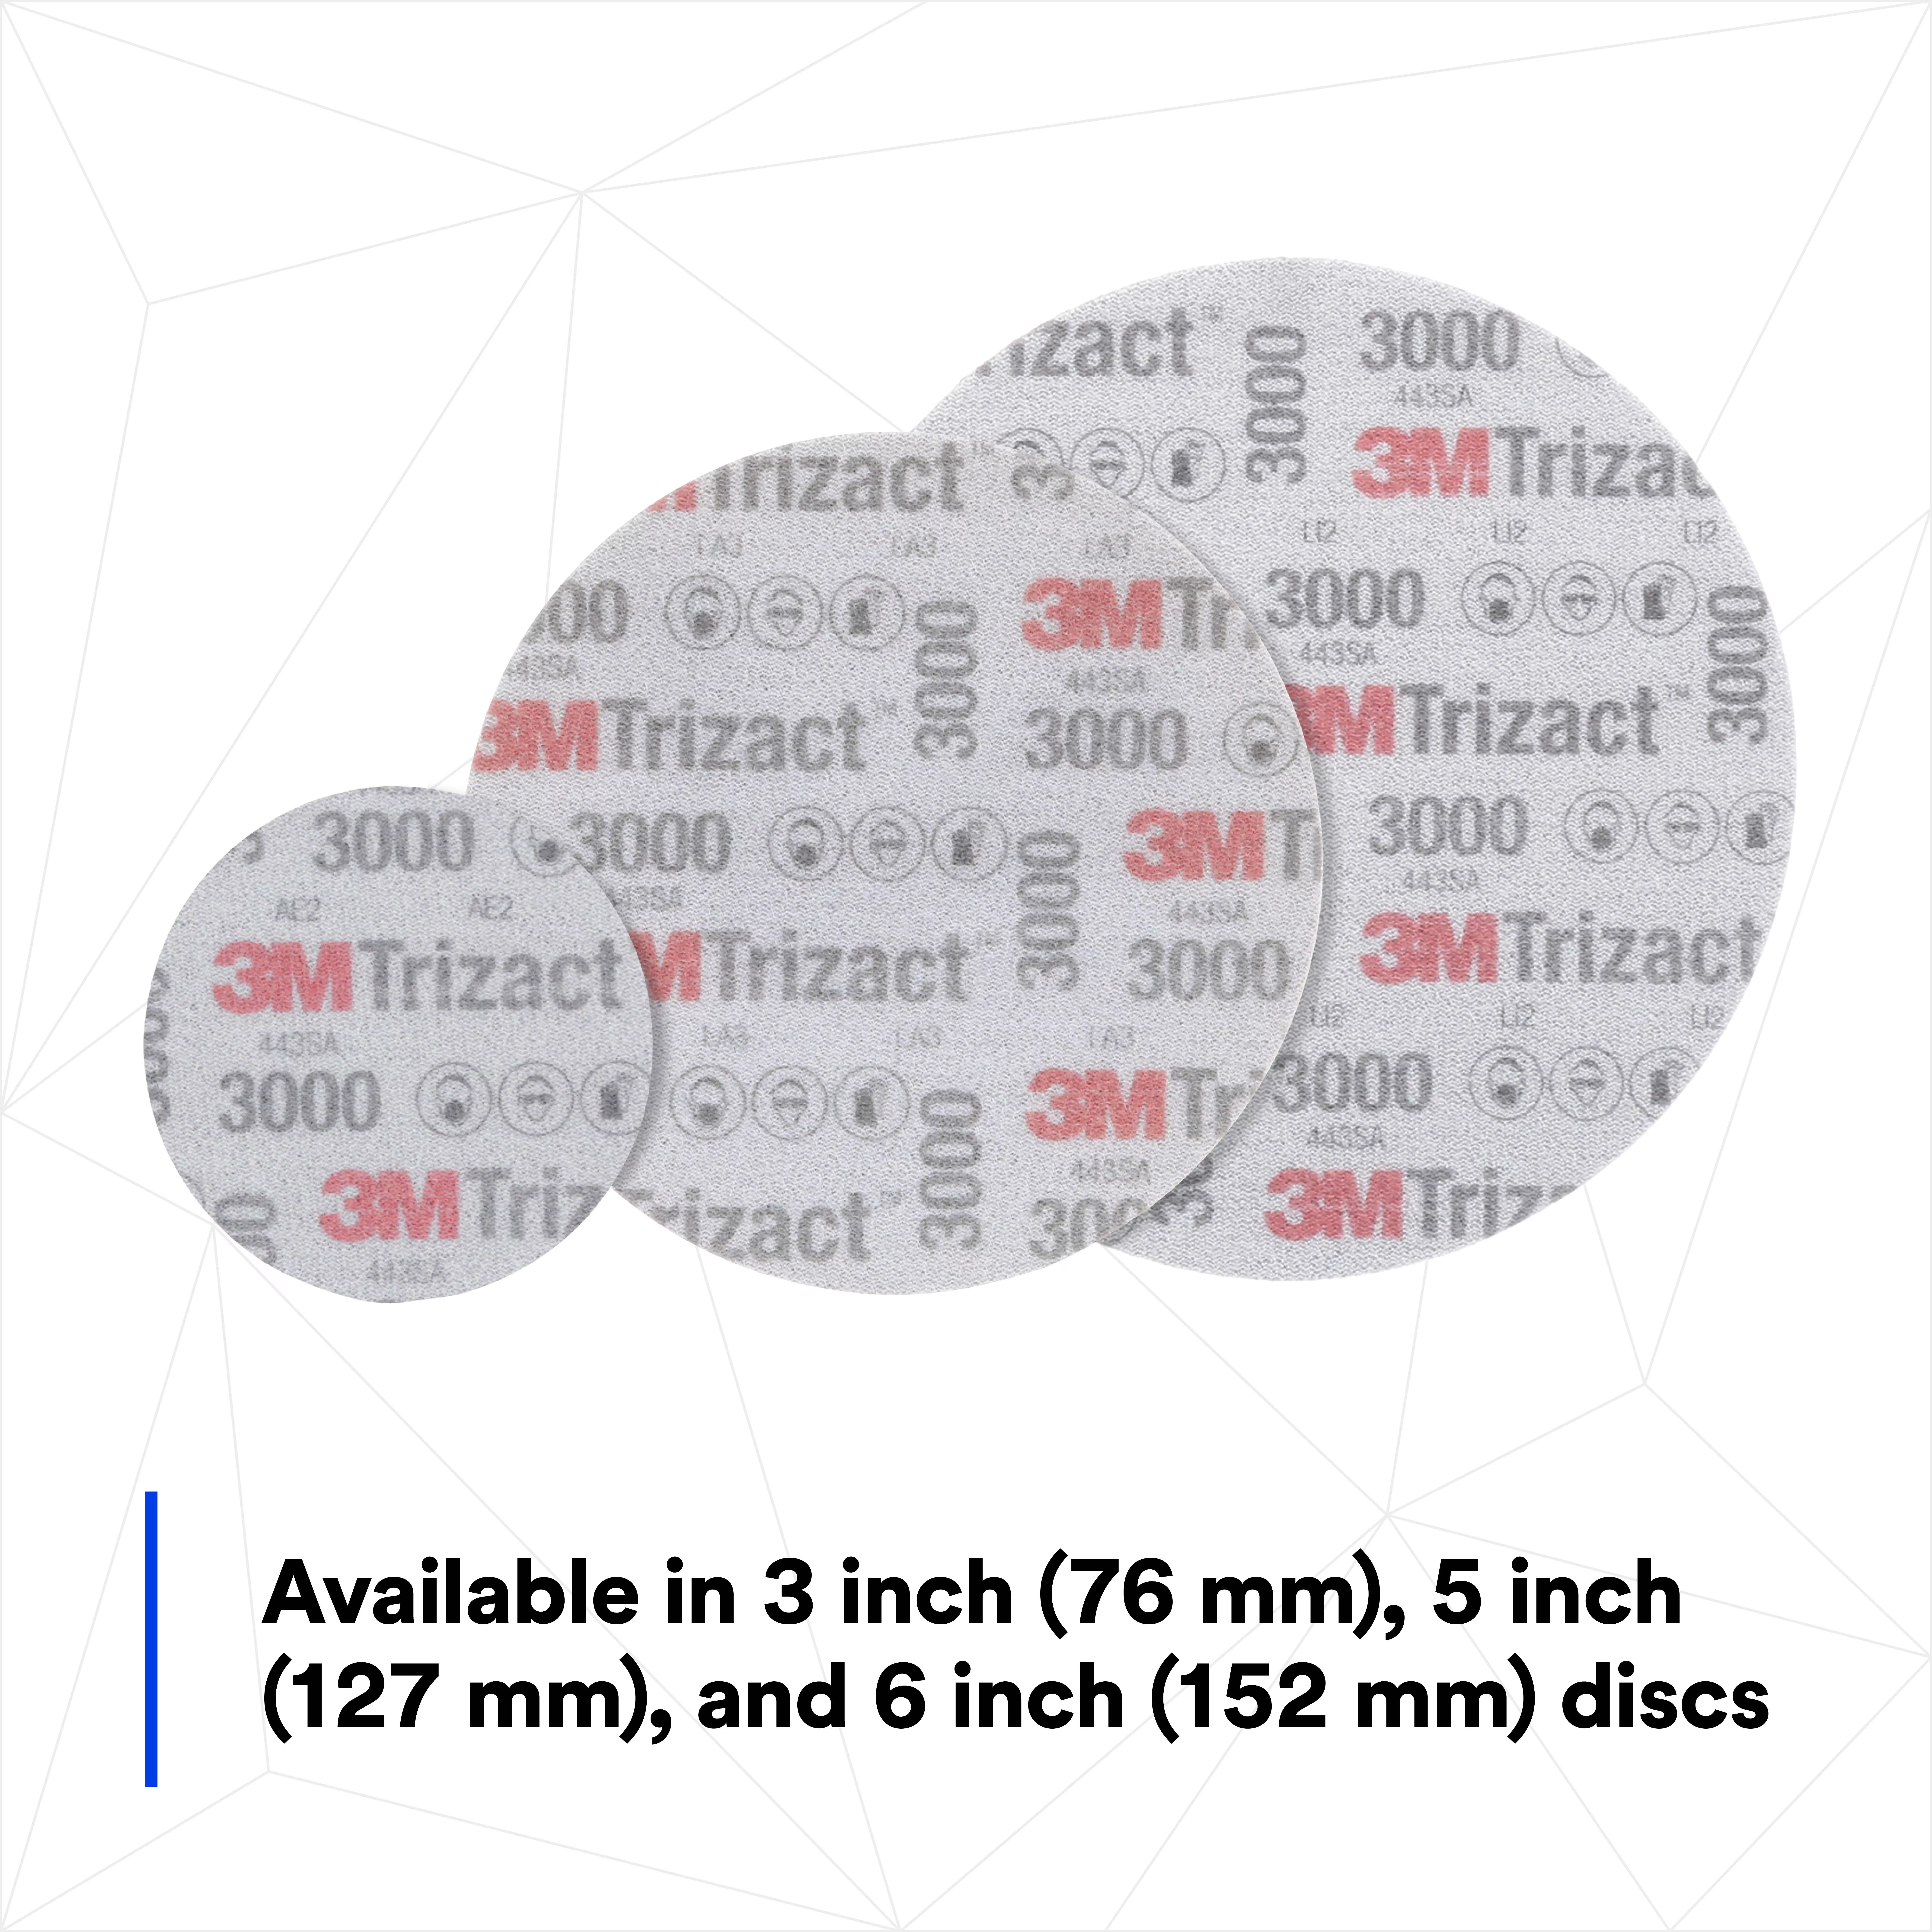 SKU 7100045387 | 3M™ Trizact™ Hookit™ Foam Disc 02087